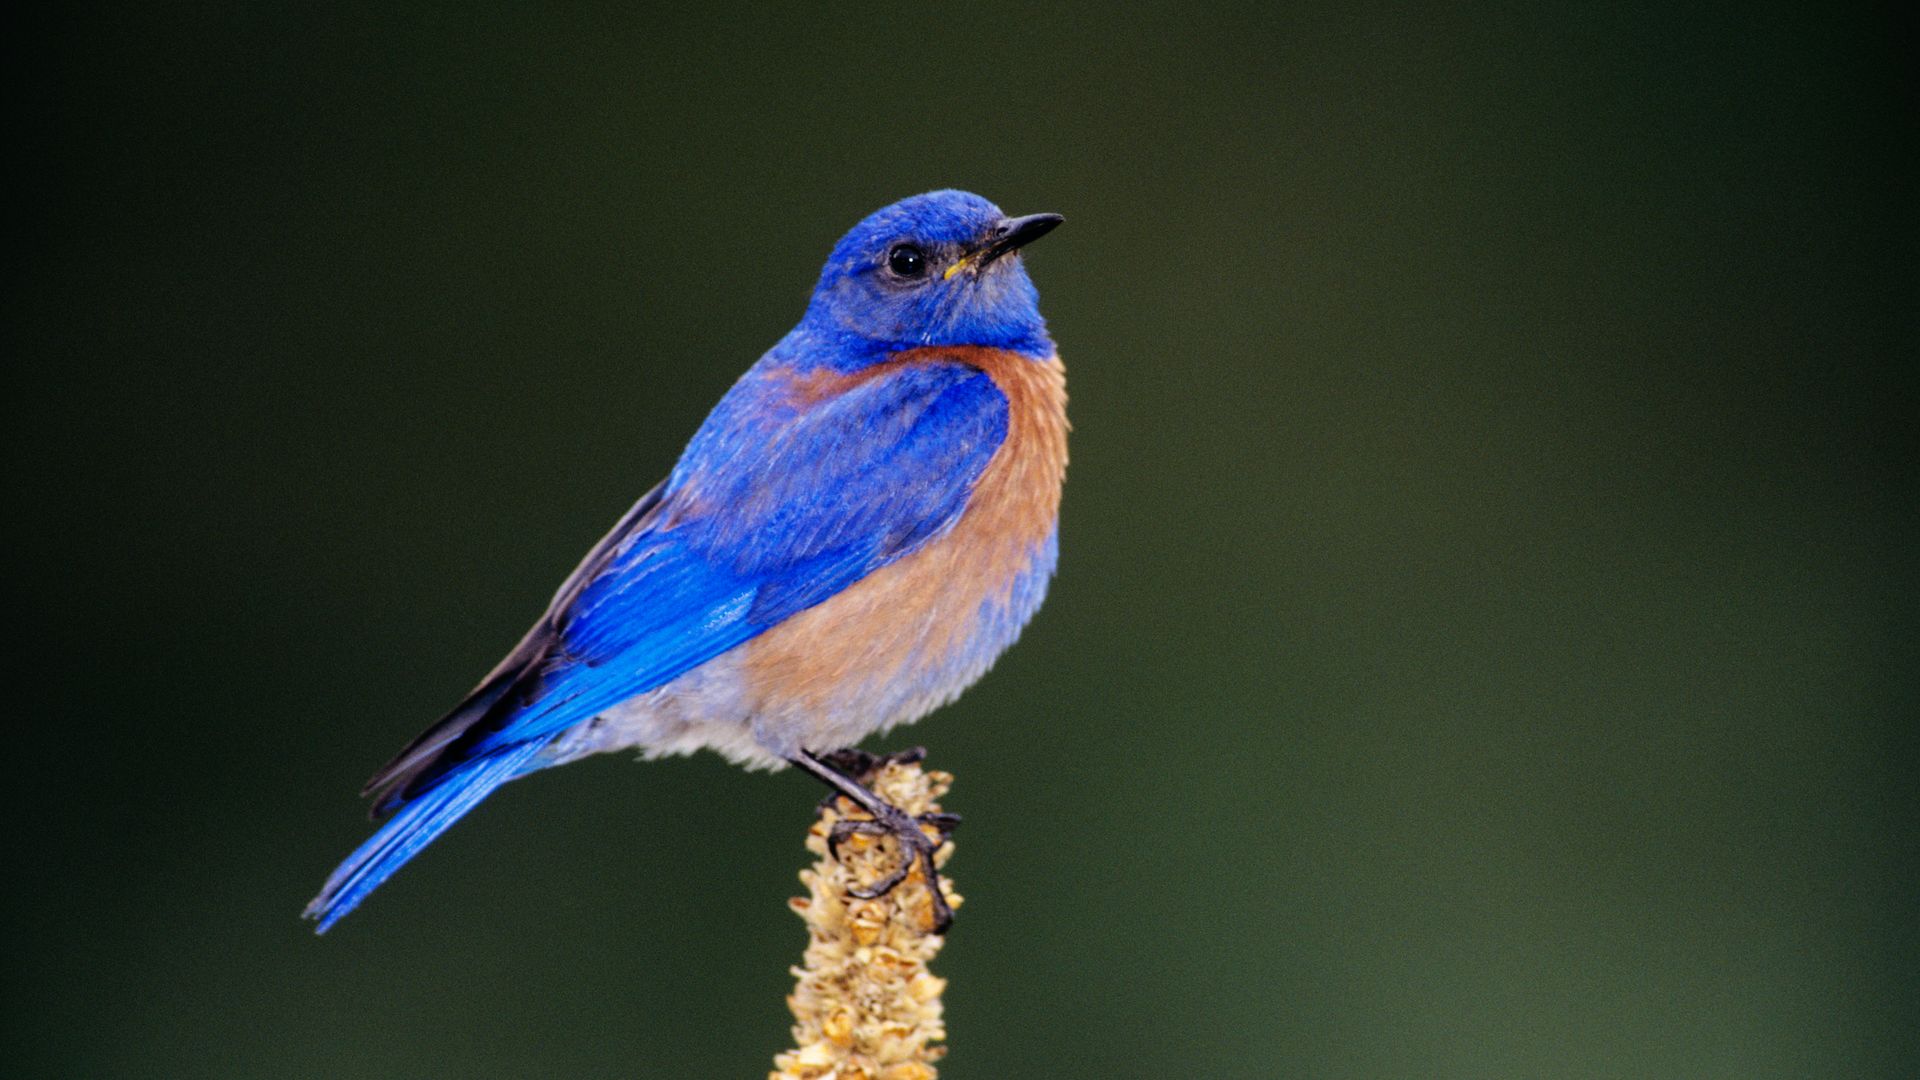 A photo of a bluebird.